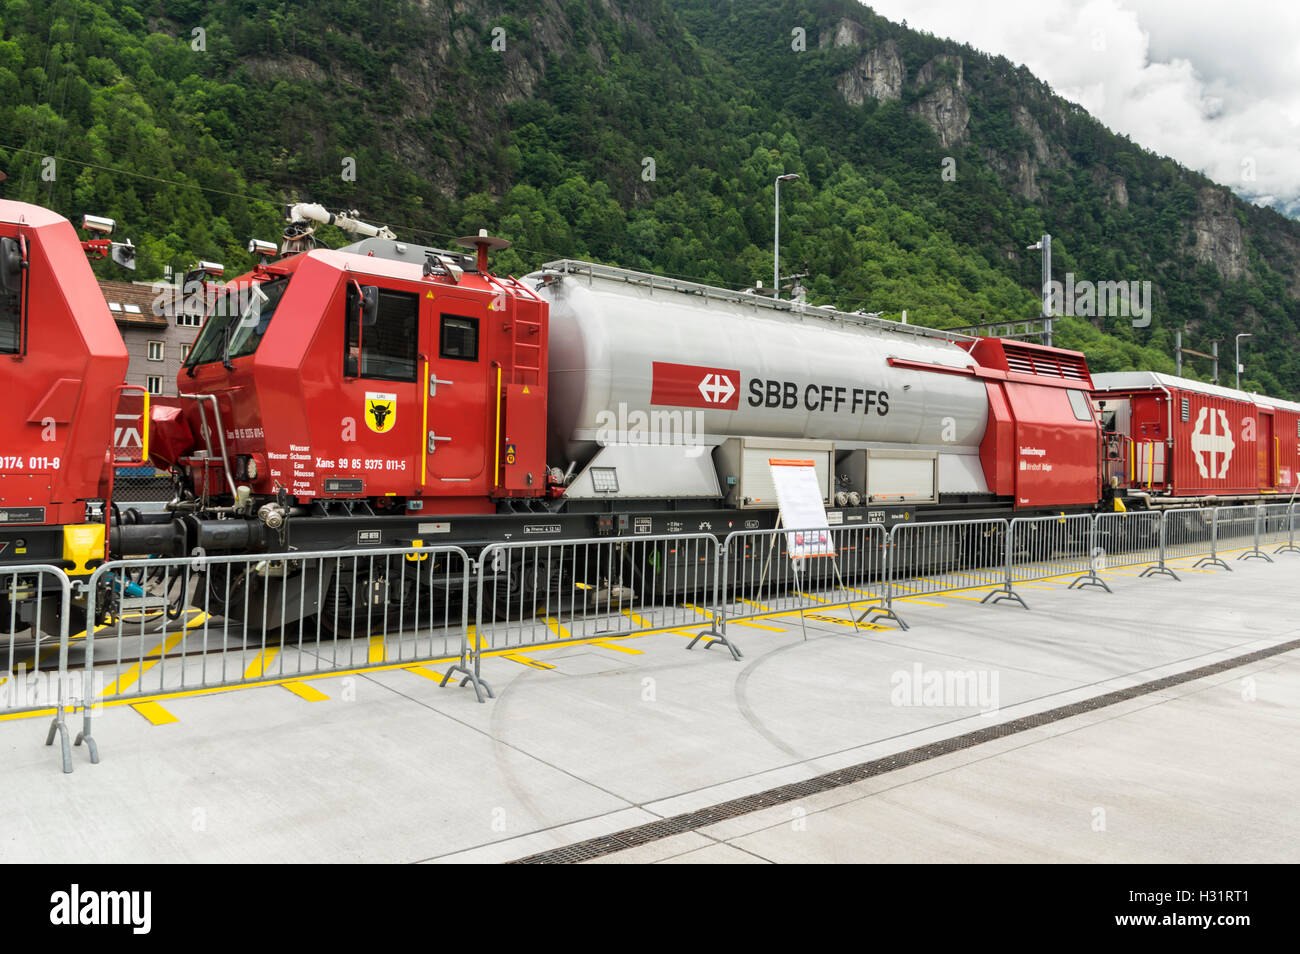 Vagón cisterna del tren de extinción de incendios y salvamento LRZ 14, basada en un monovolumen Windhoff. Operado por SBB, los Ferrocarriles Federales Suizos. Foto de stock